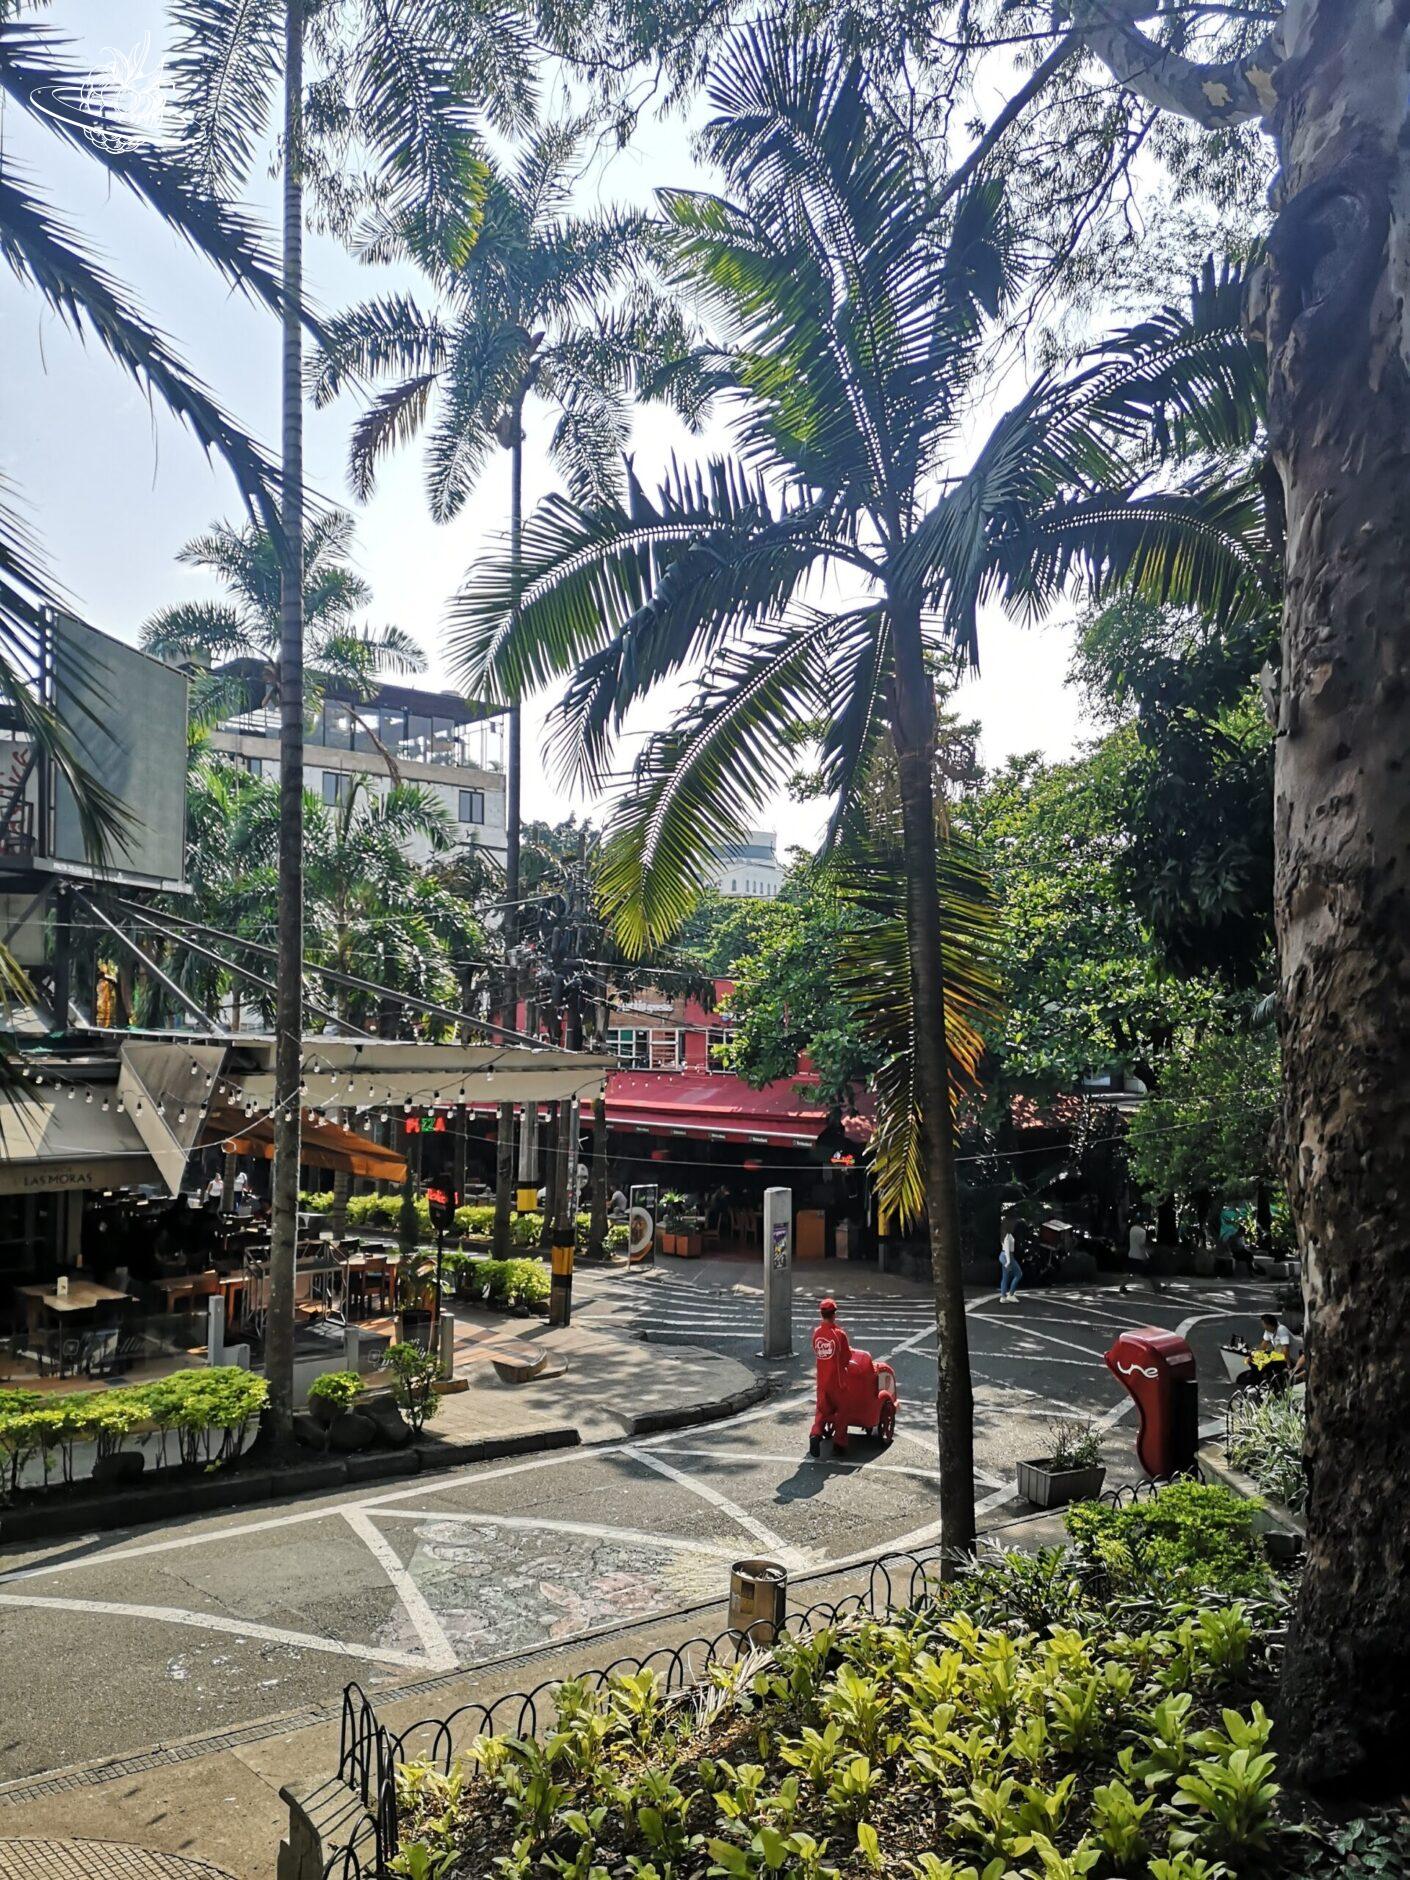 Gewundene Strasse mit Palmen und einem Café